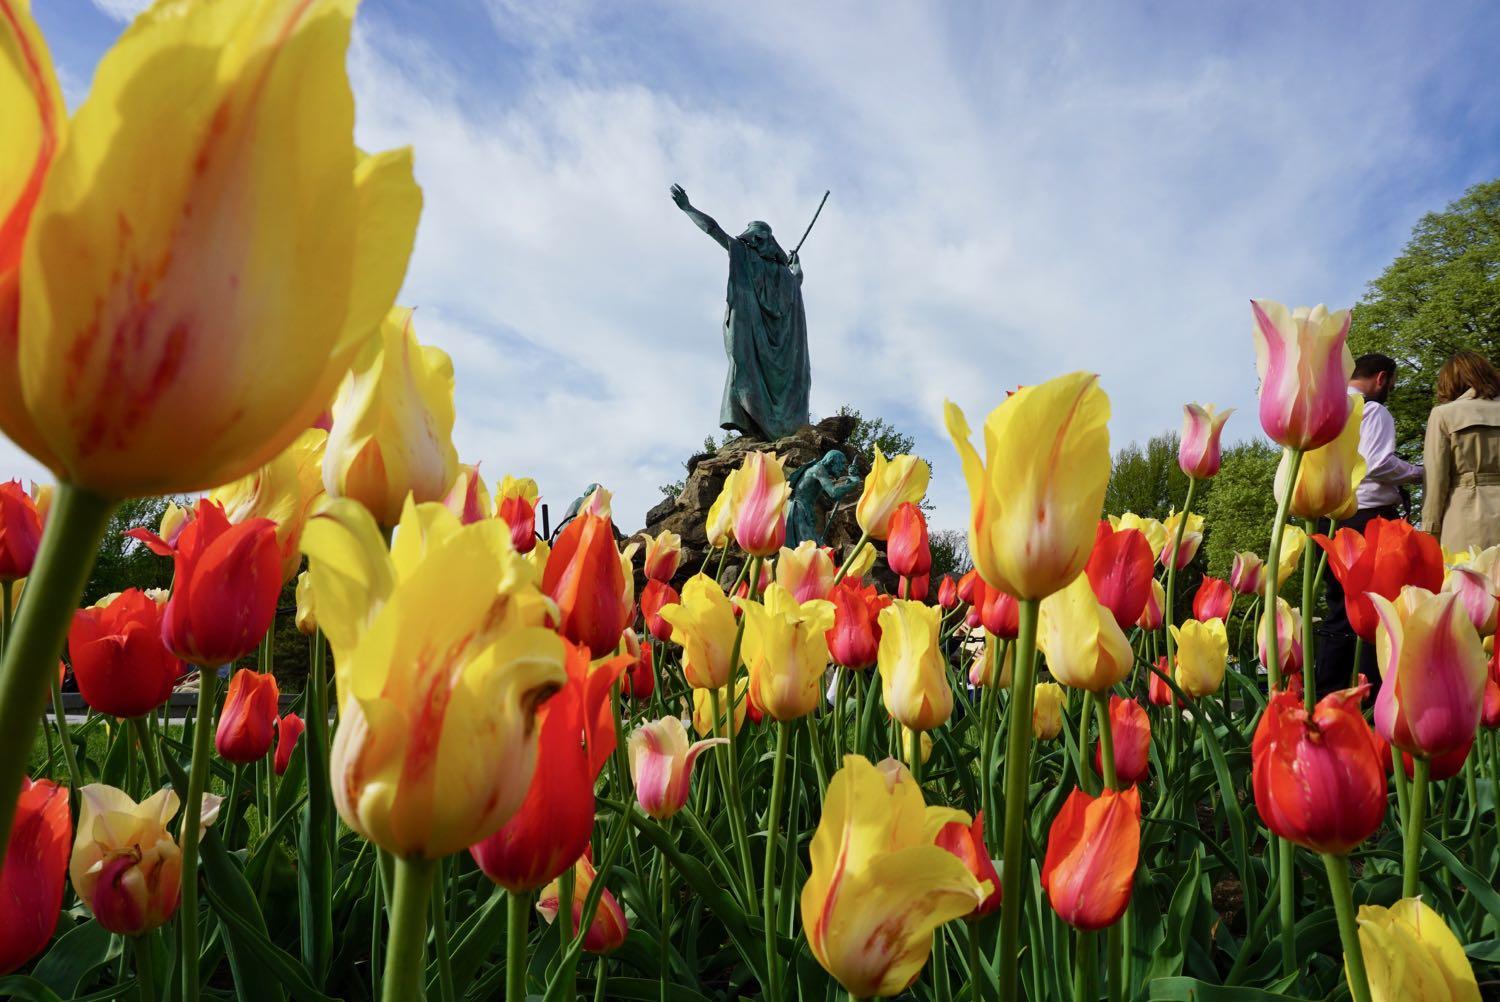 Washington Park tulips 2018 Moses